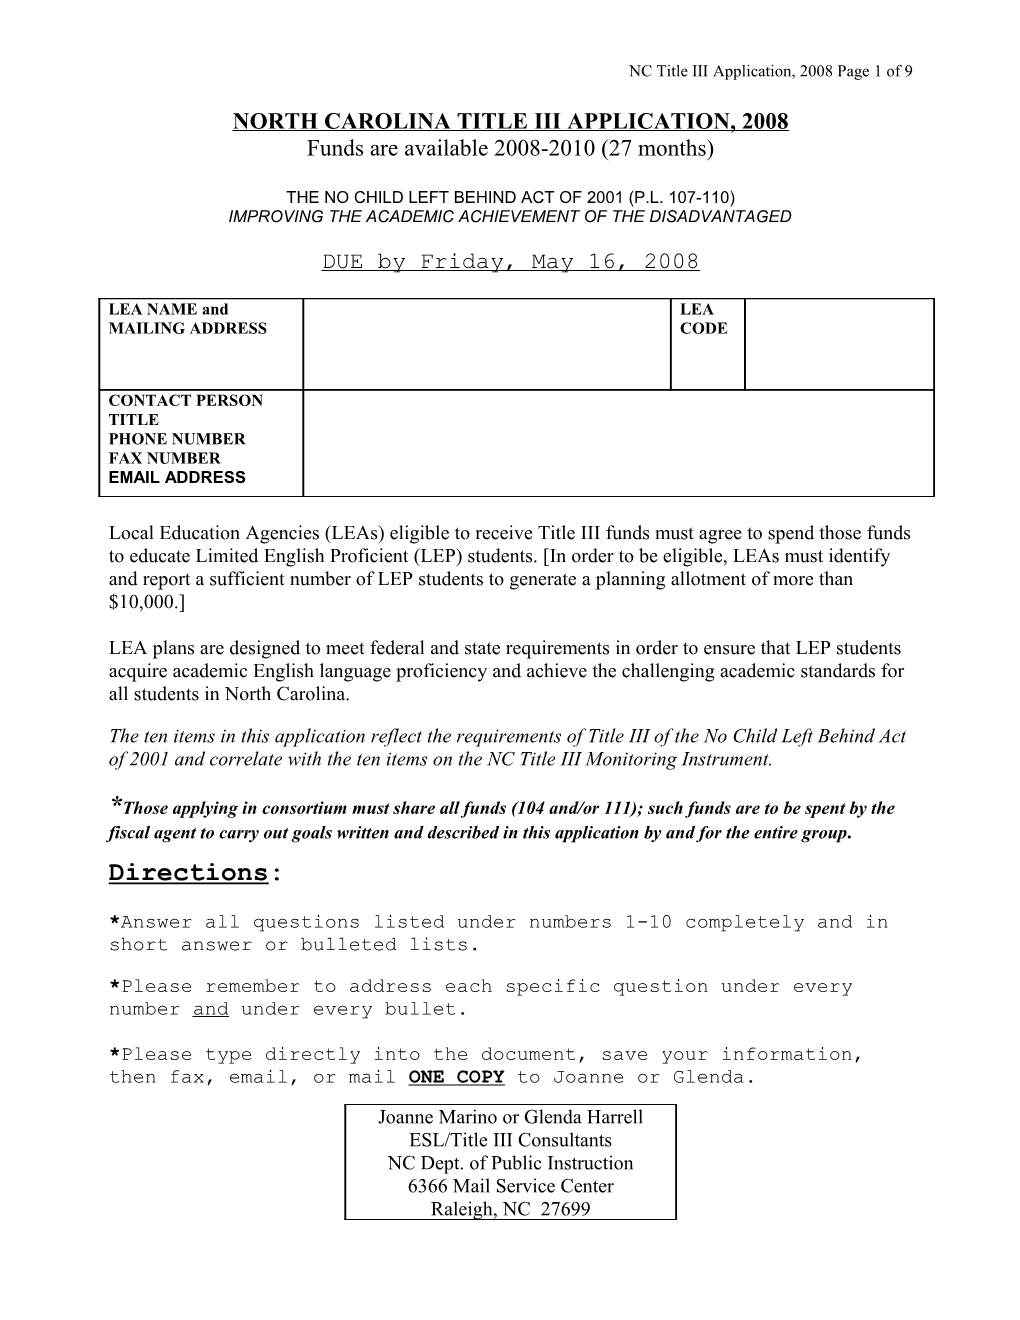 Checklist for LEA Title III Grant Application 2002-2003